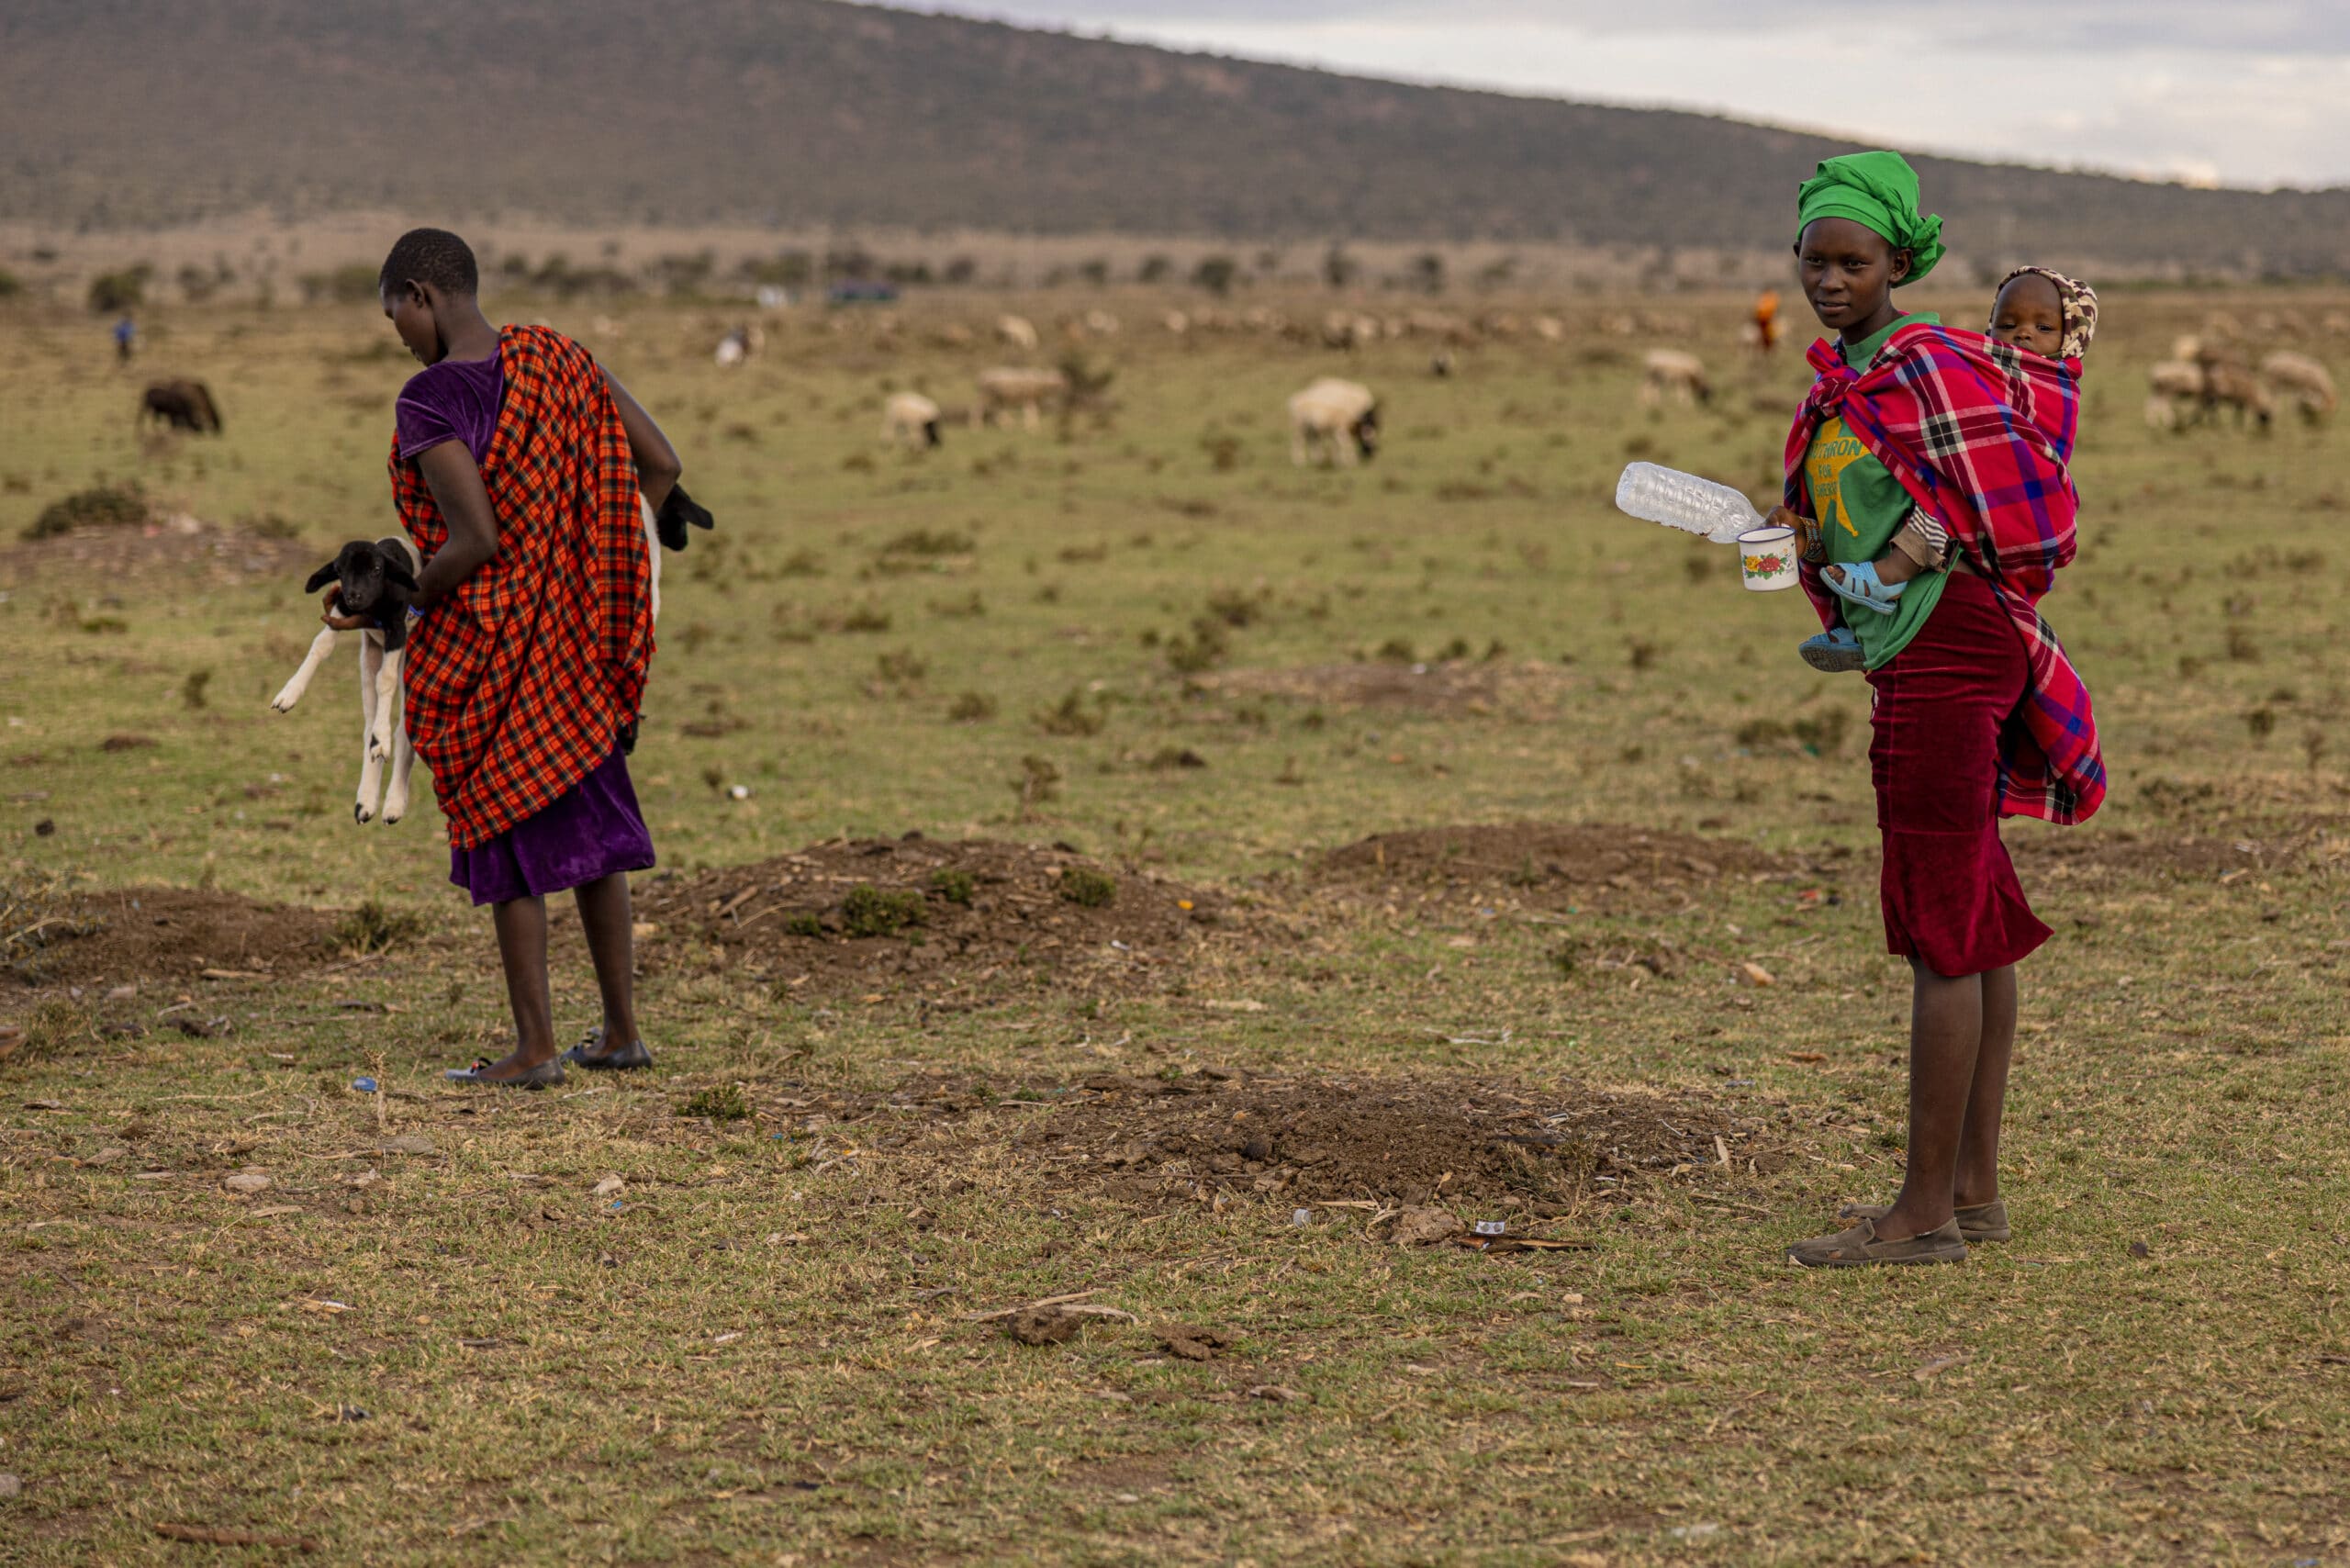 Zwei Massai-Frauen in traditioneller Kleidung. Eine hält ein Baby und einen Plastikbehälter, die andere blickt weg. In der Ferne streifen Ziegen umher. © Fotografie Tomas Rodriguez